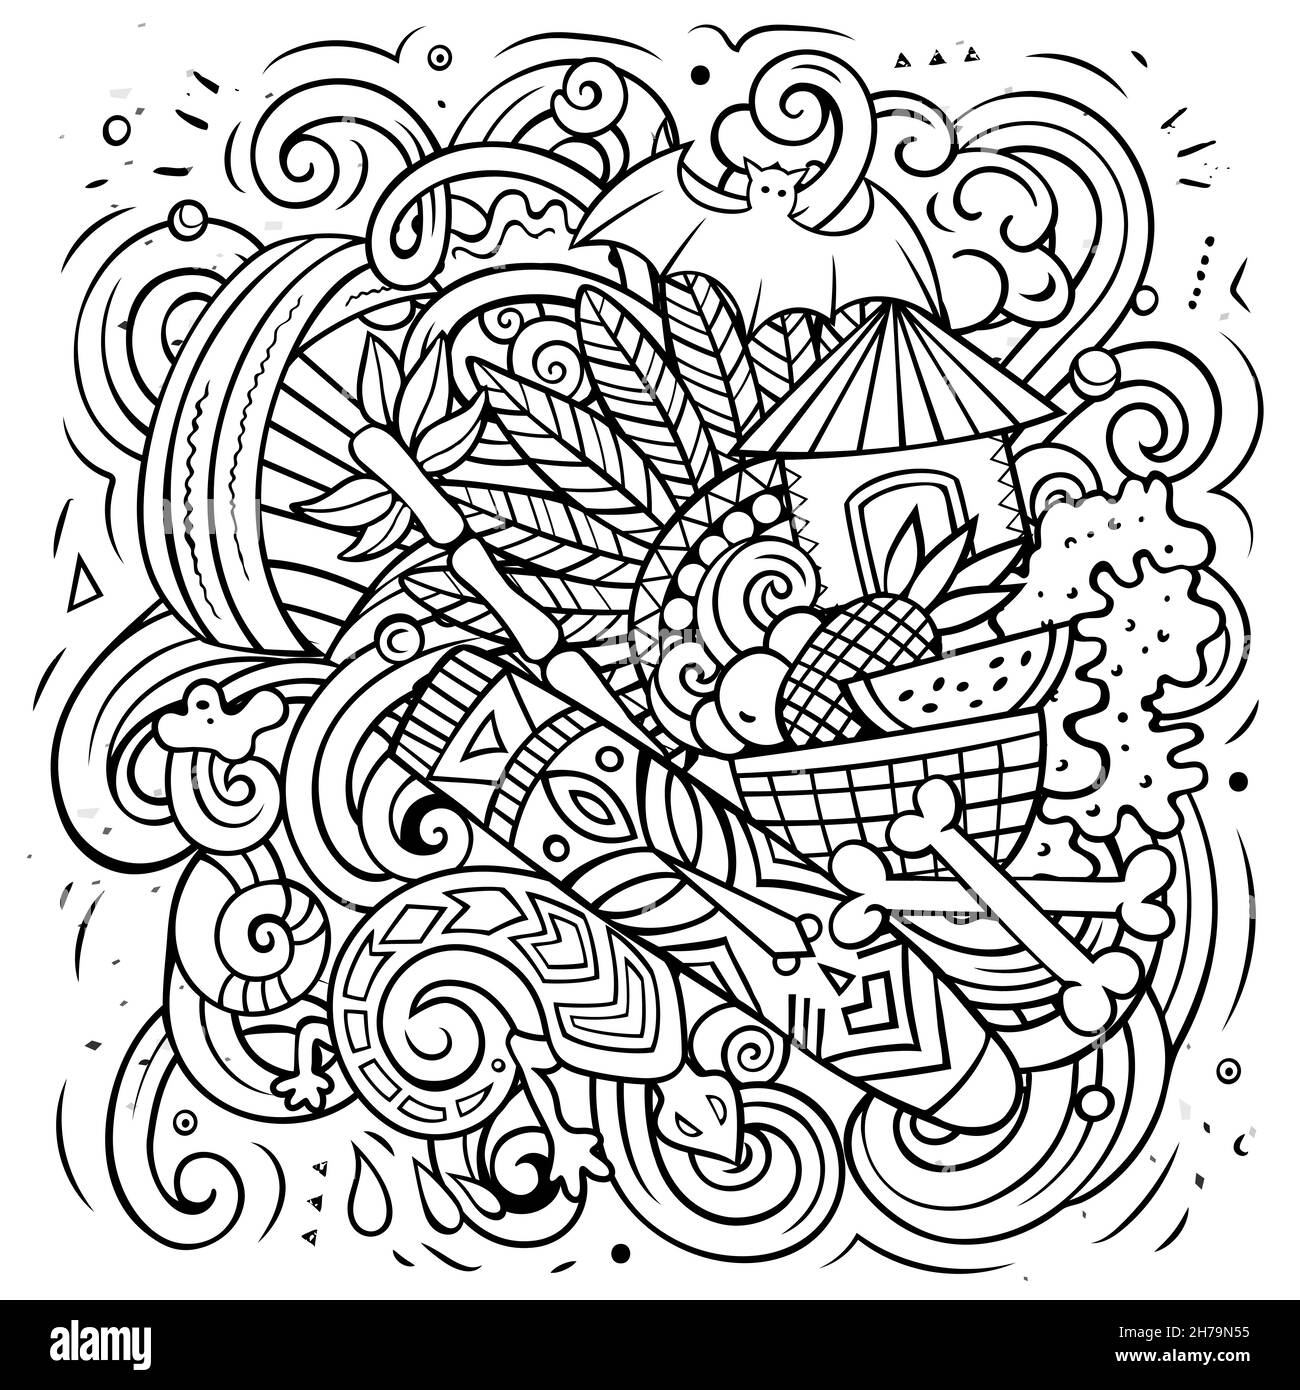 Illustrazione di fumetto vettoriale di Figi. Composizione dettagliata di schizzo con molti oggetti e simboli esotici dell'isola. Illustrazione Vettoriale